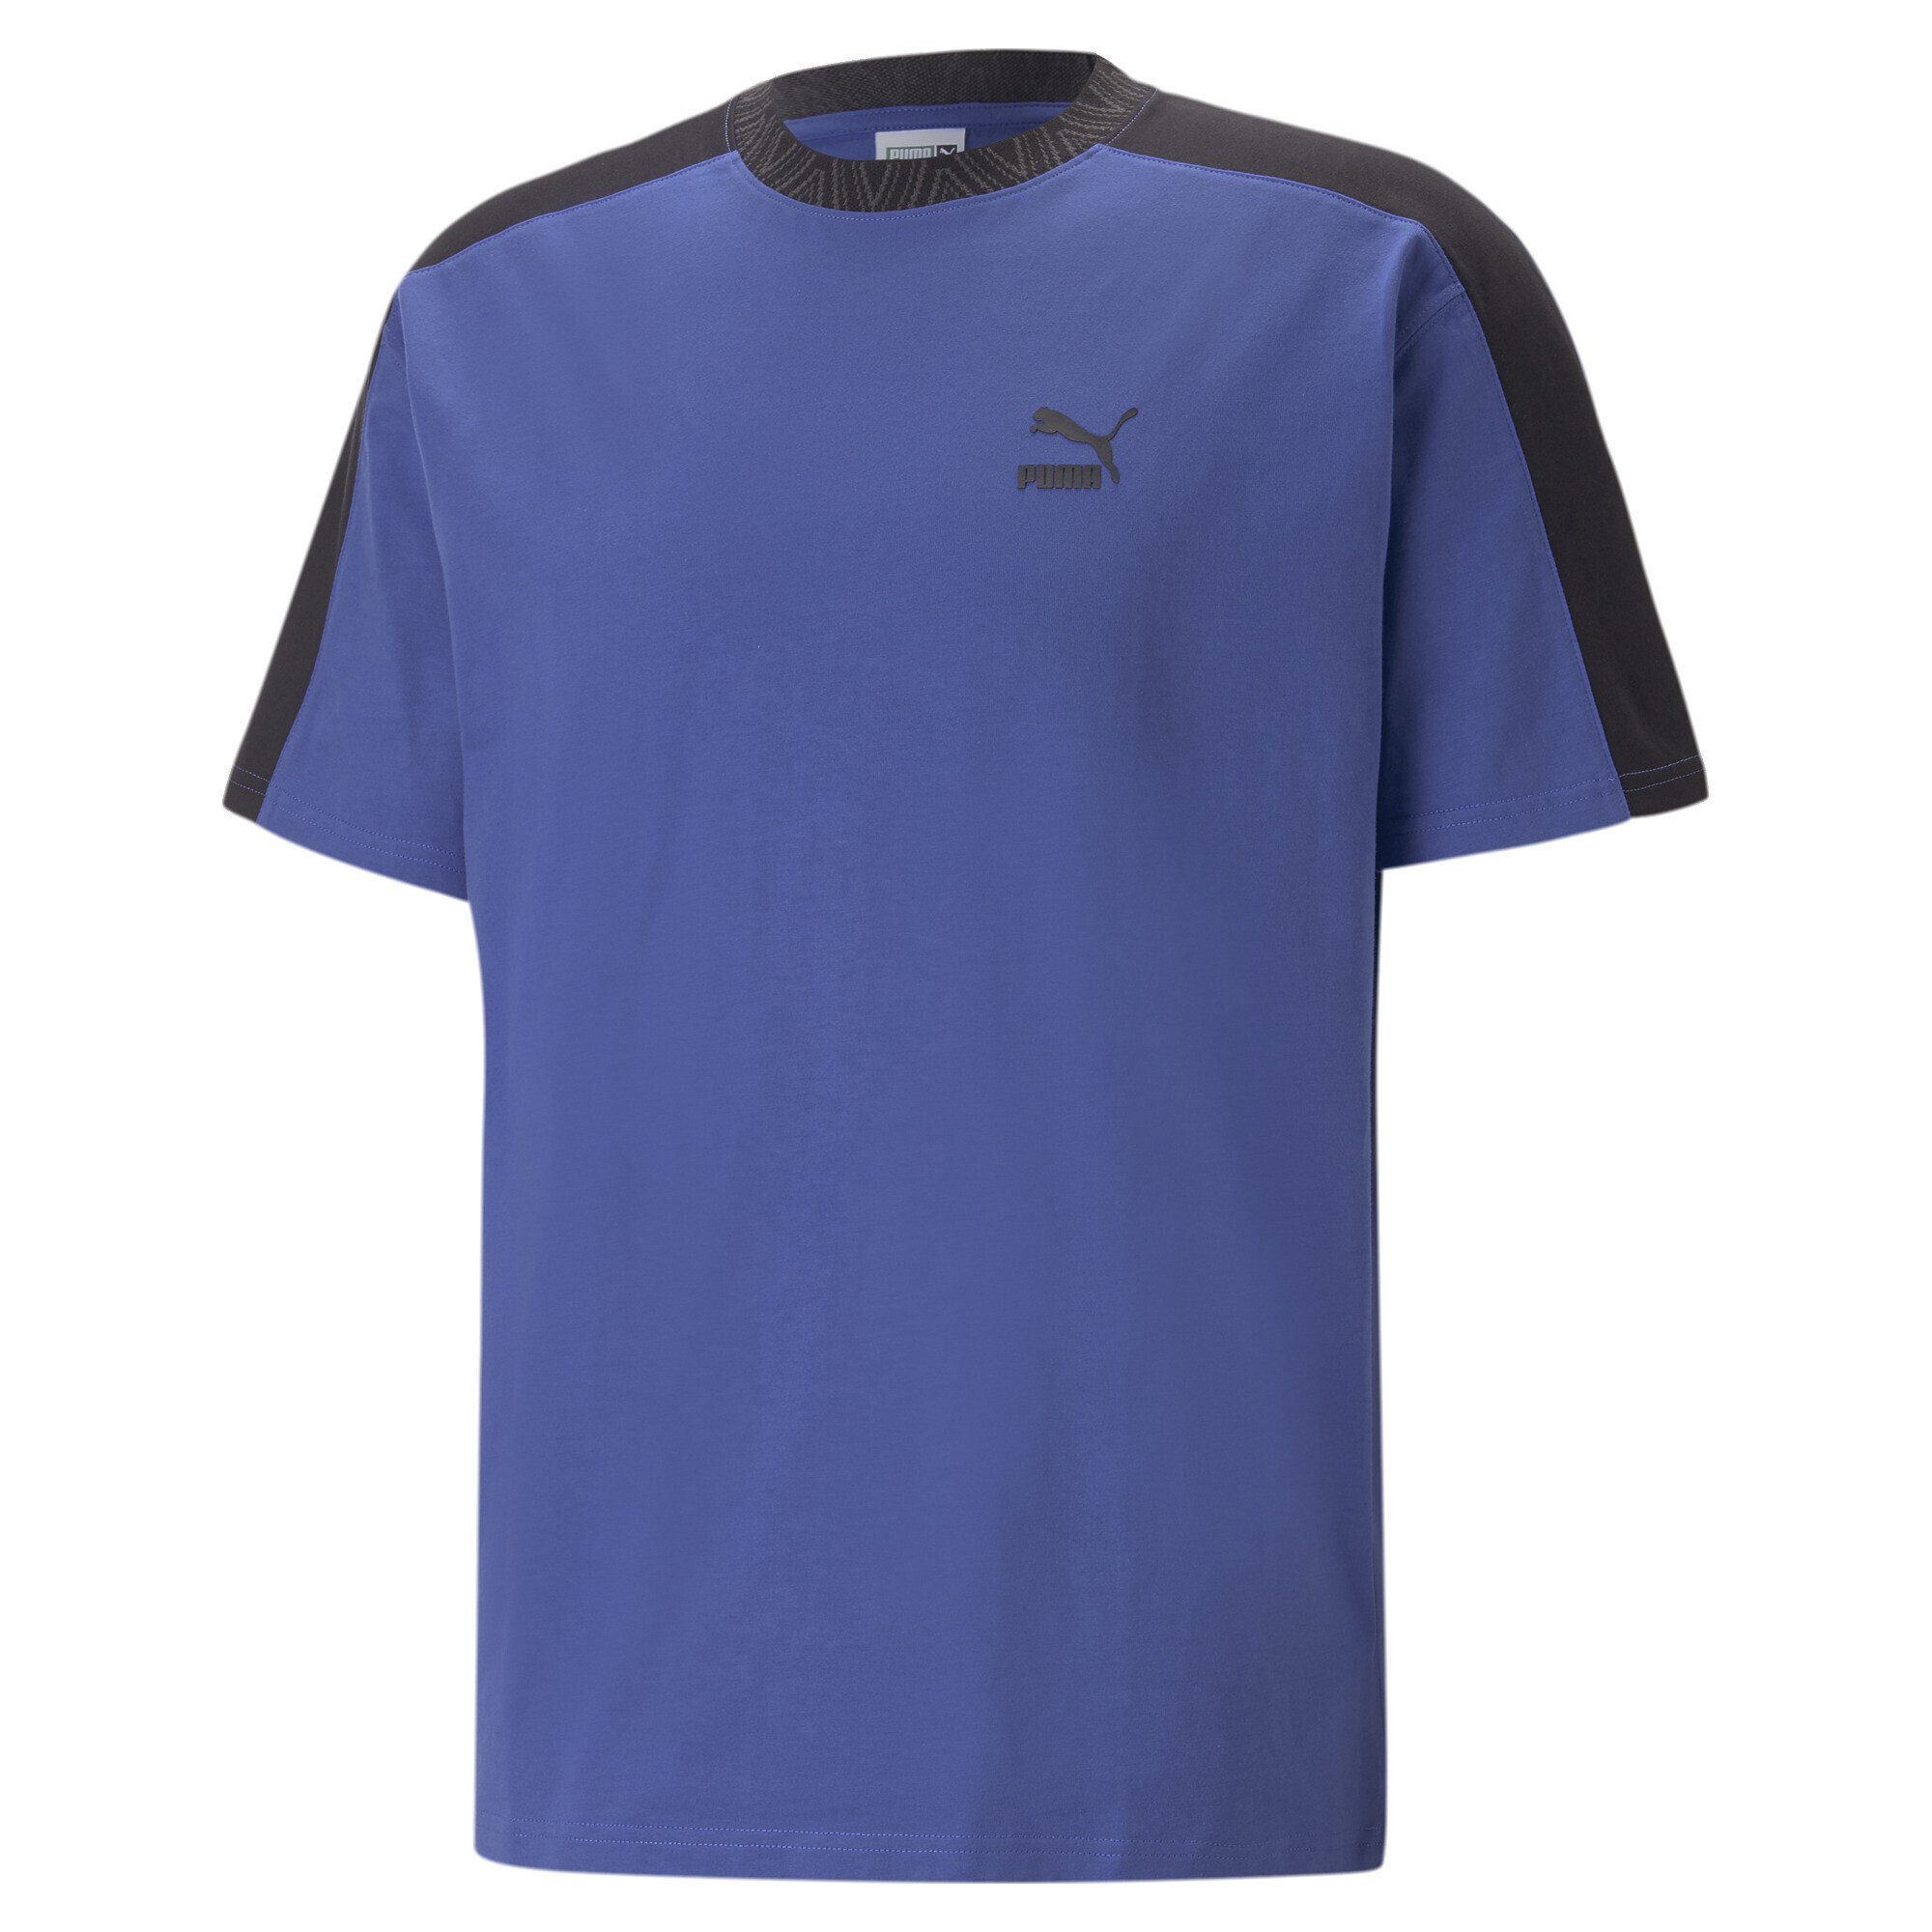 TREND T-Shirt T-Shirt T7 Blue 7ETTER Sapphire PUMA Herren Royal